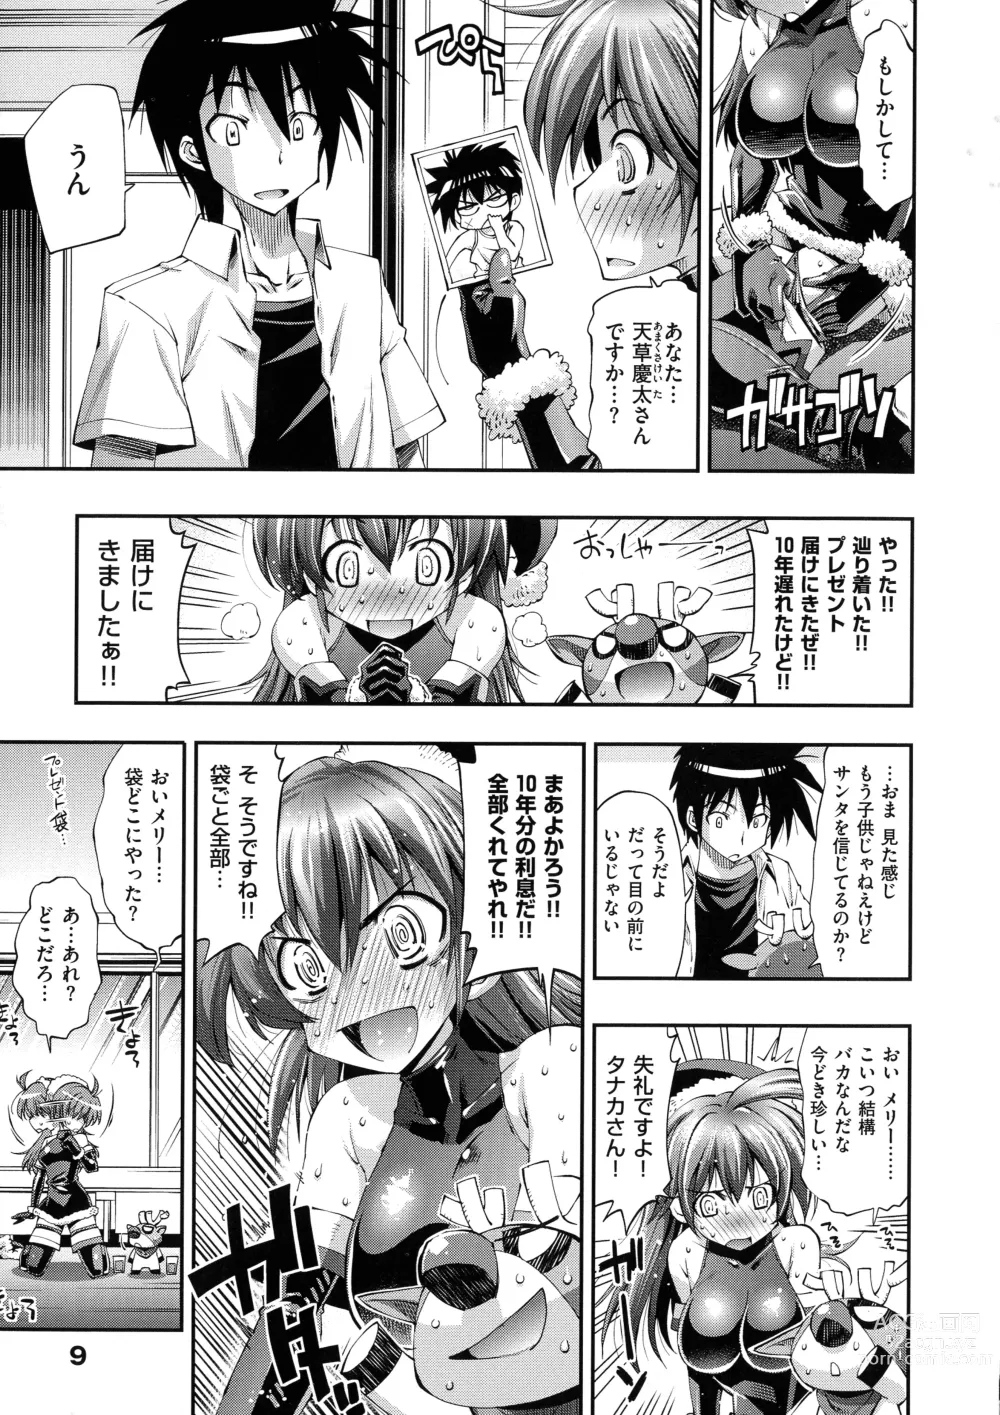 Page 9 of manga Kanojo wa Manatsu no Santa Claus